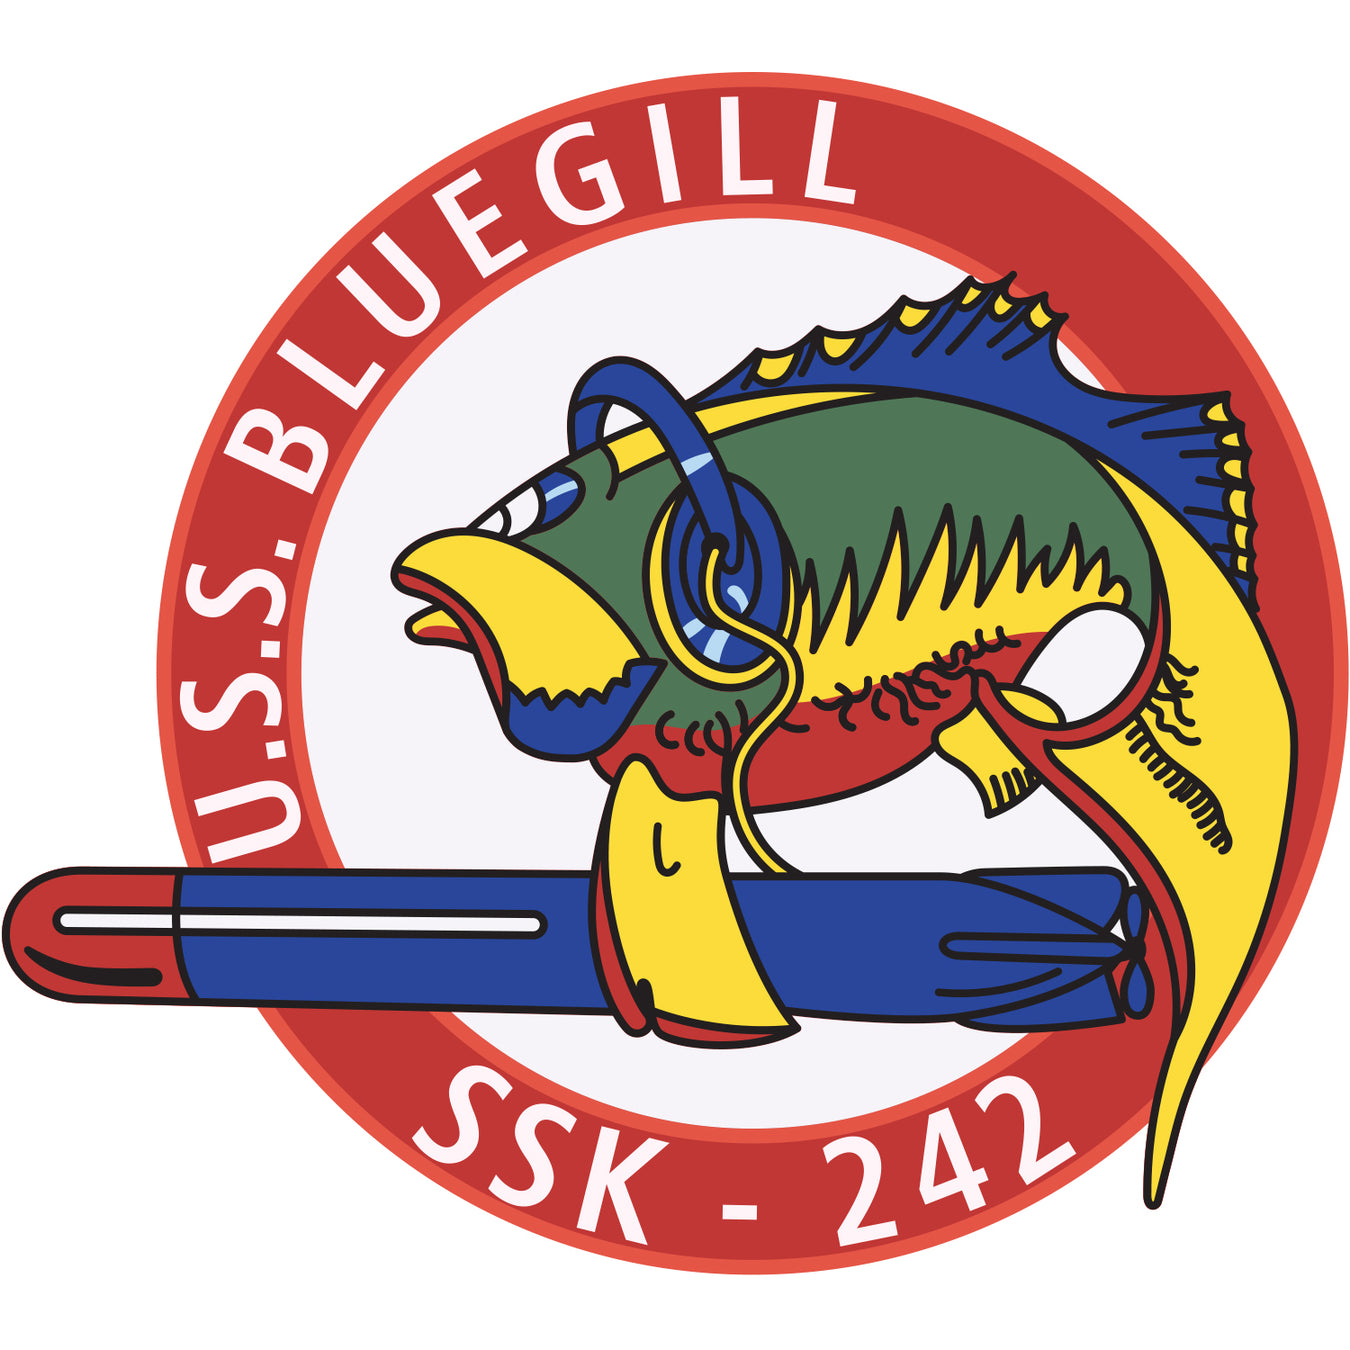 USS Bluegill (SSK-242)